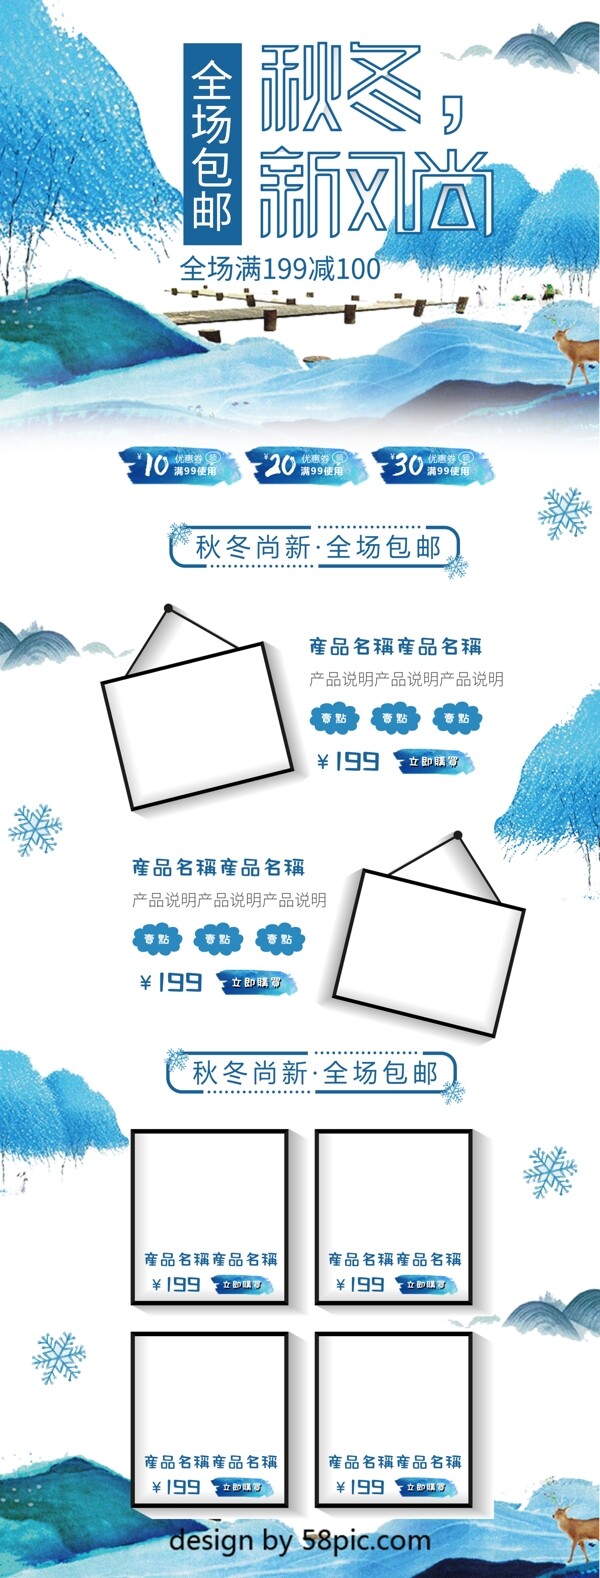 蓝色中国风山水画秋冬新风尚首页模板